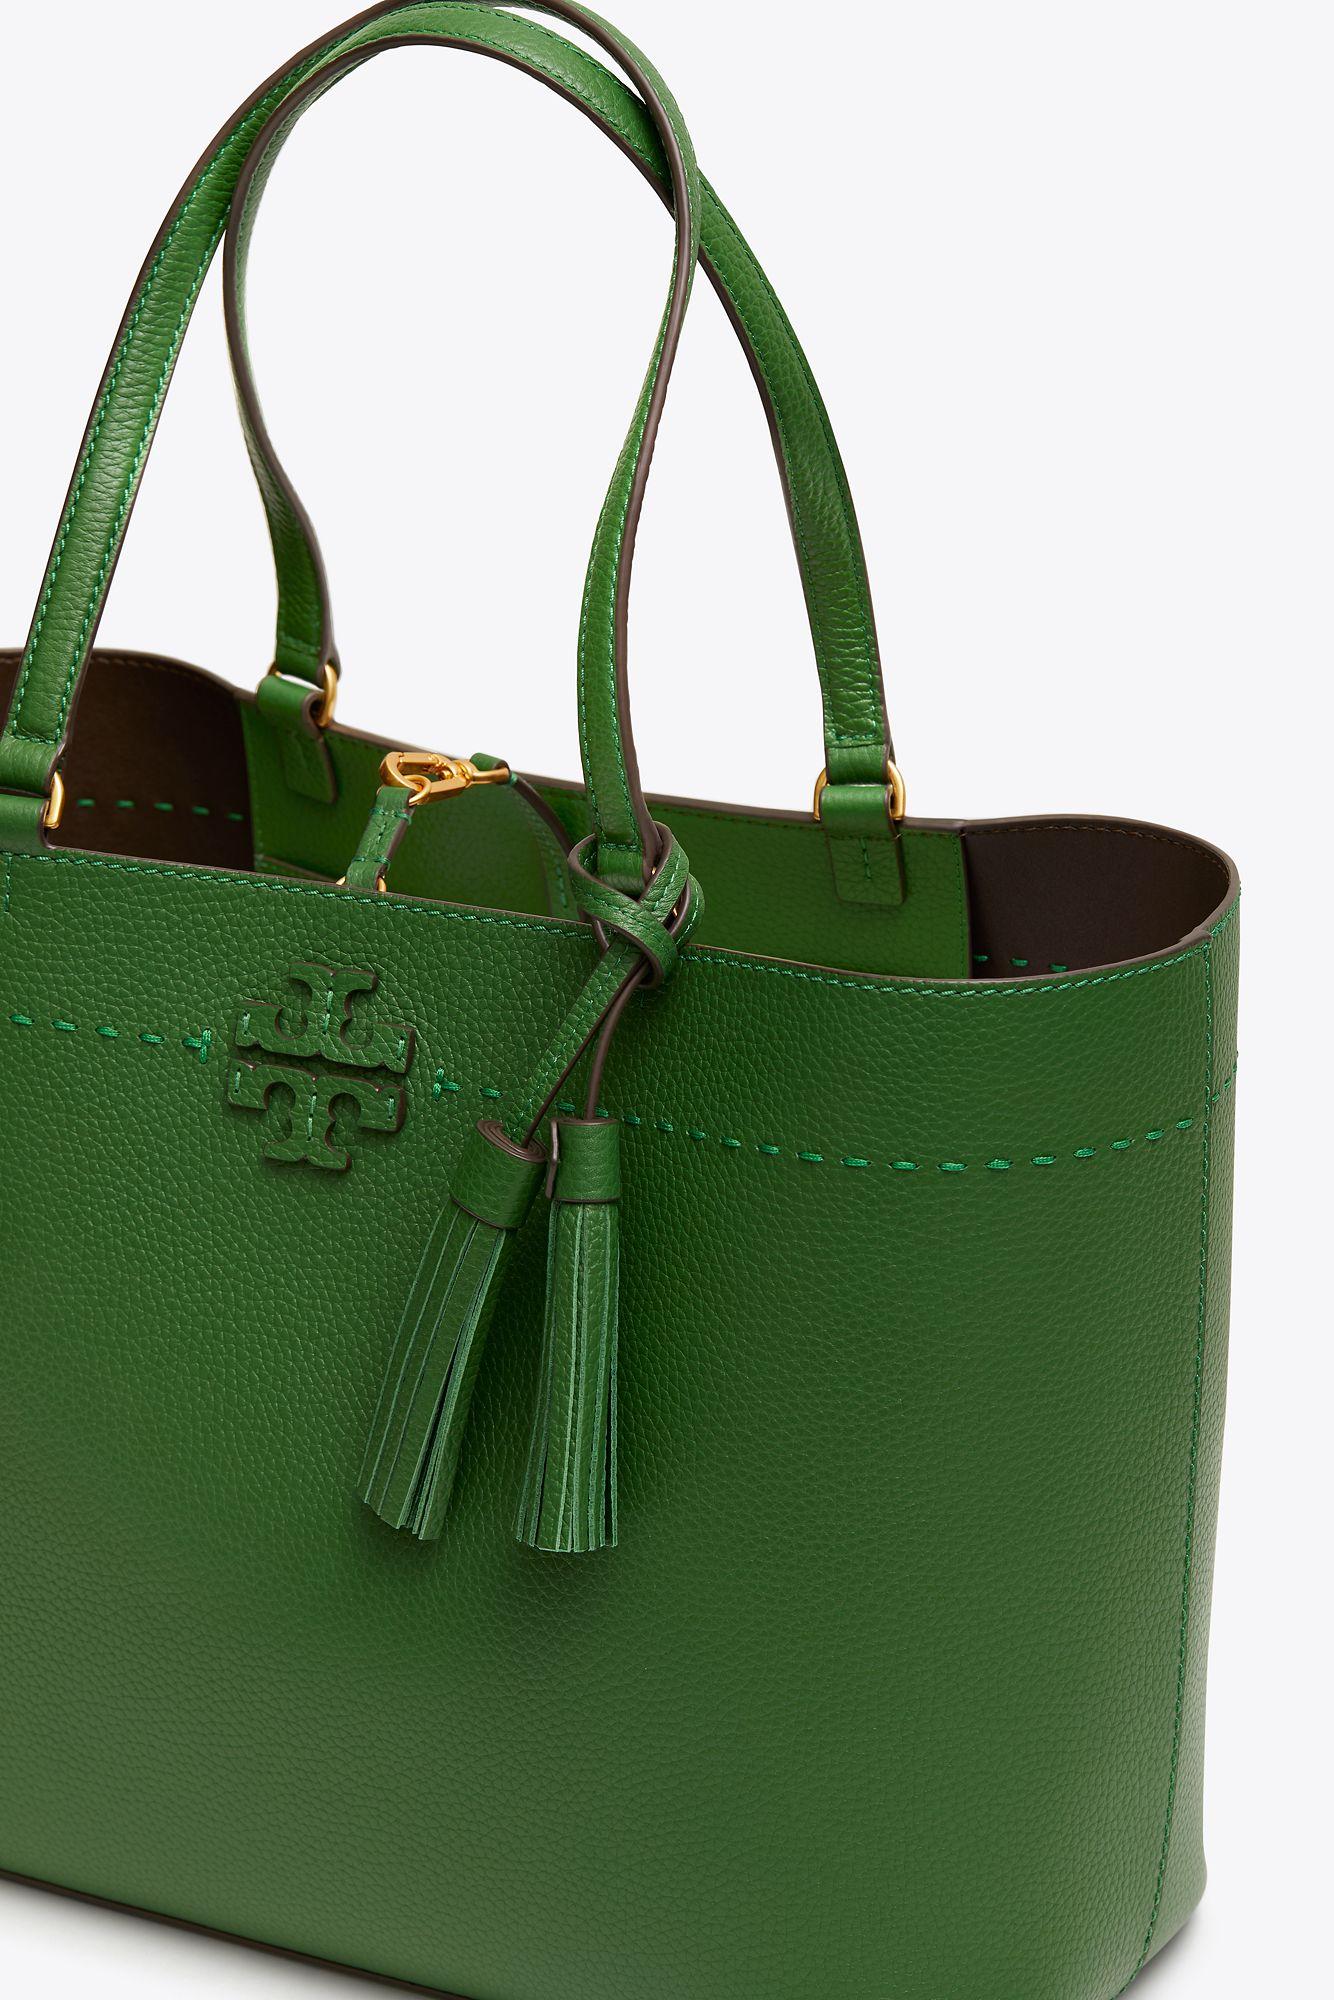 Tory Burch Green Handbag | semashow.com